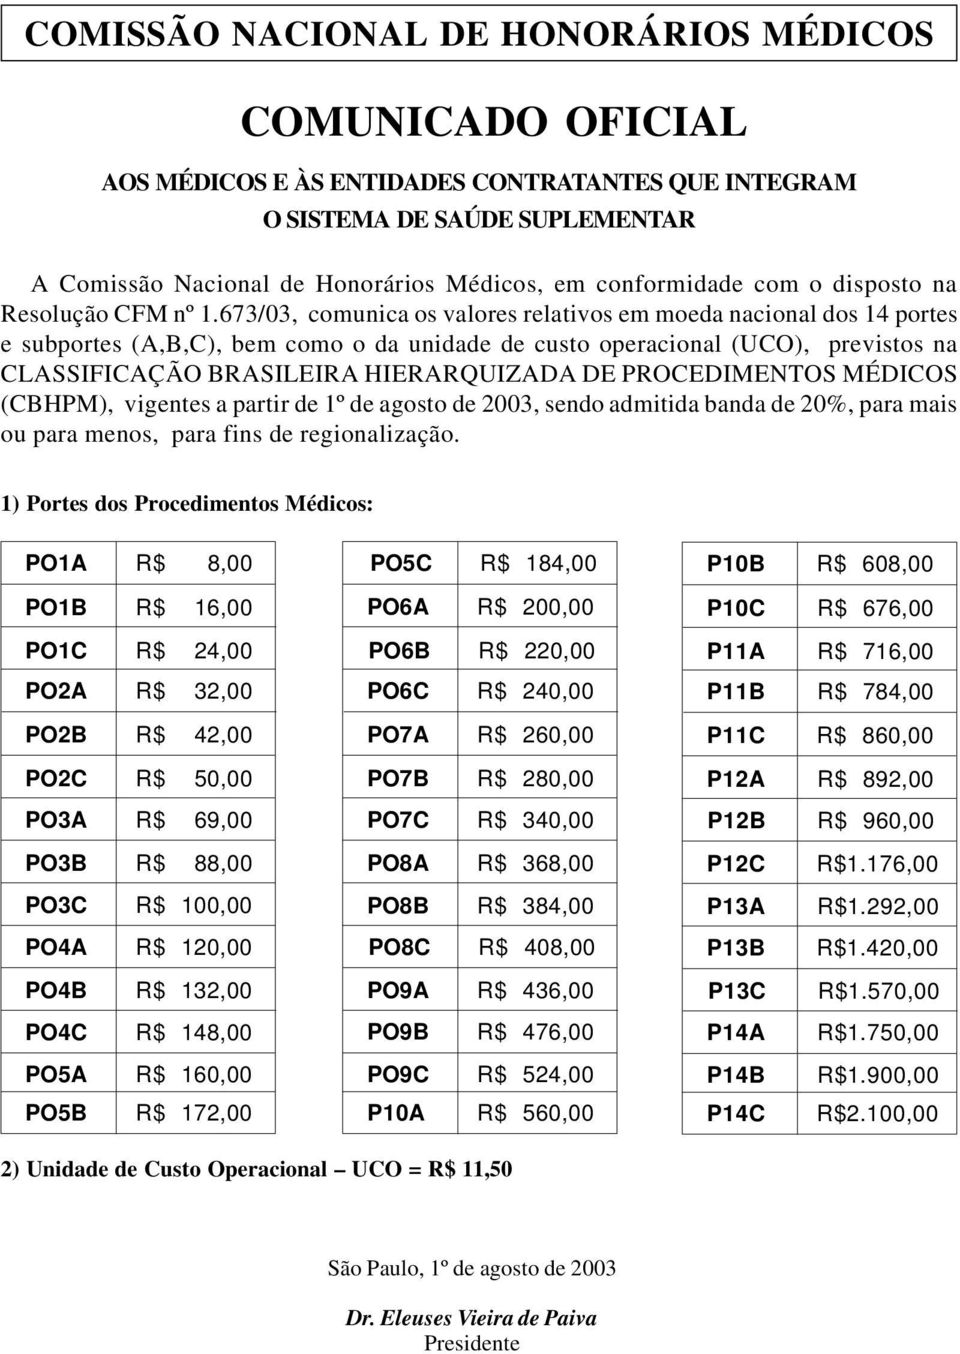 673/03, comunica os valores relativos em moeda nacional dos 14 portes e subportes (A,B,C), bem como o da unidade de custo operacional (UCO), previstos na CLASSIFICAÇÃO BRASILEIRA HIERARQUIZADA DE